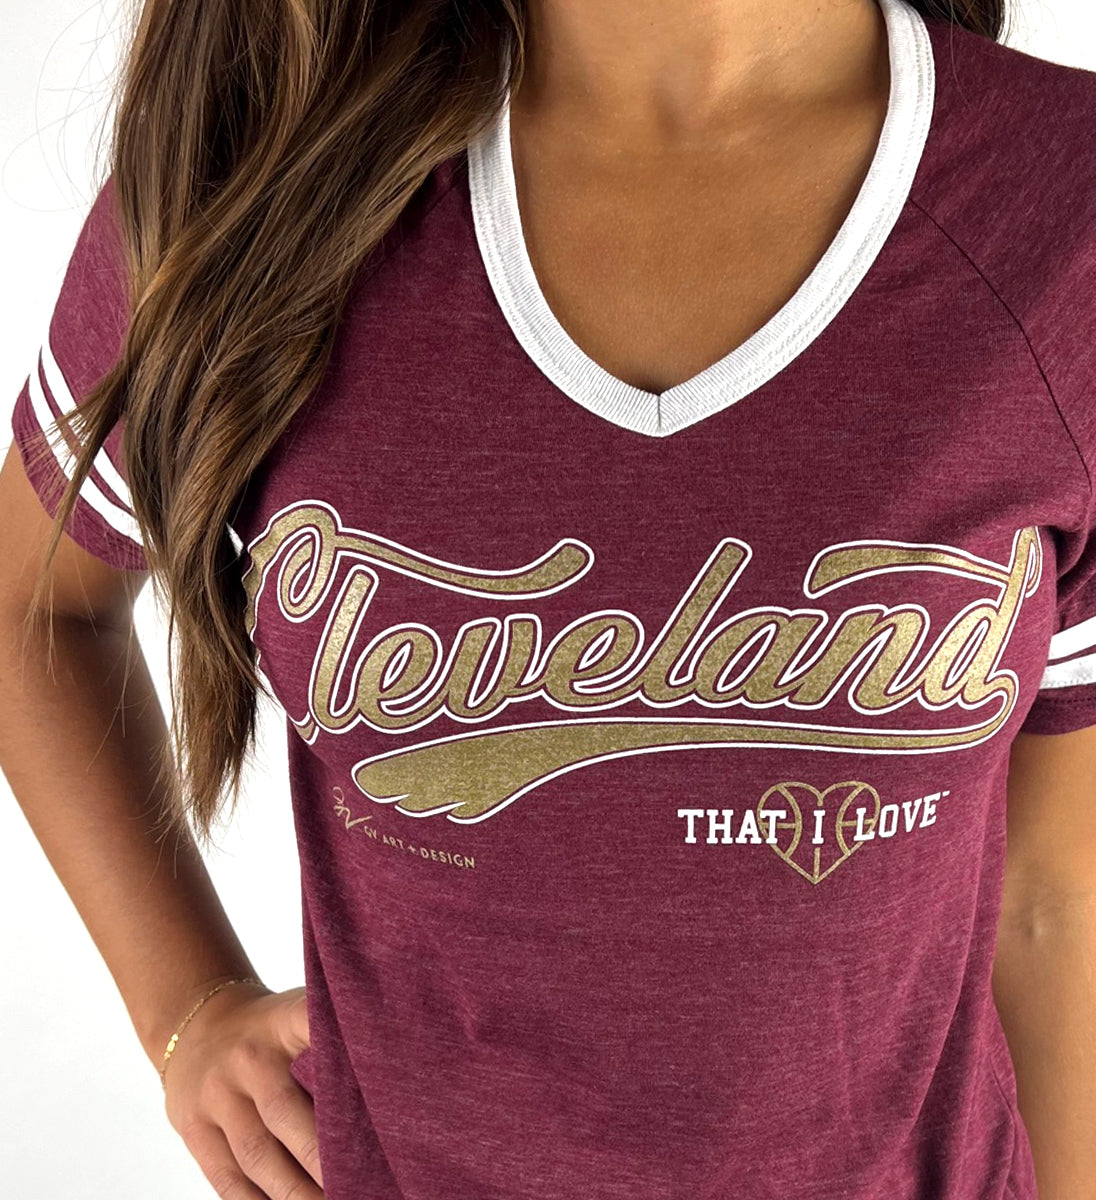 Cleveland Script Basketball - Unisex Crew T-Shirt